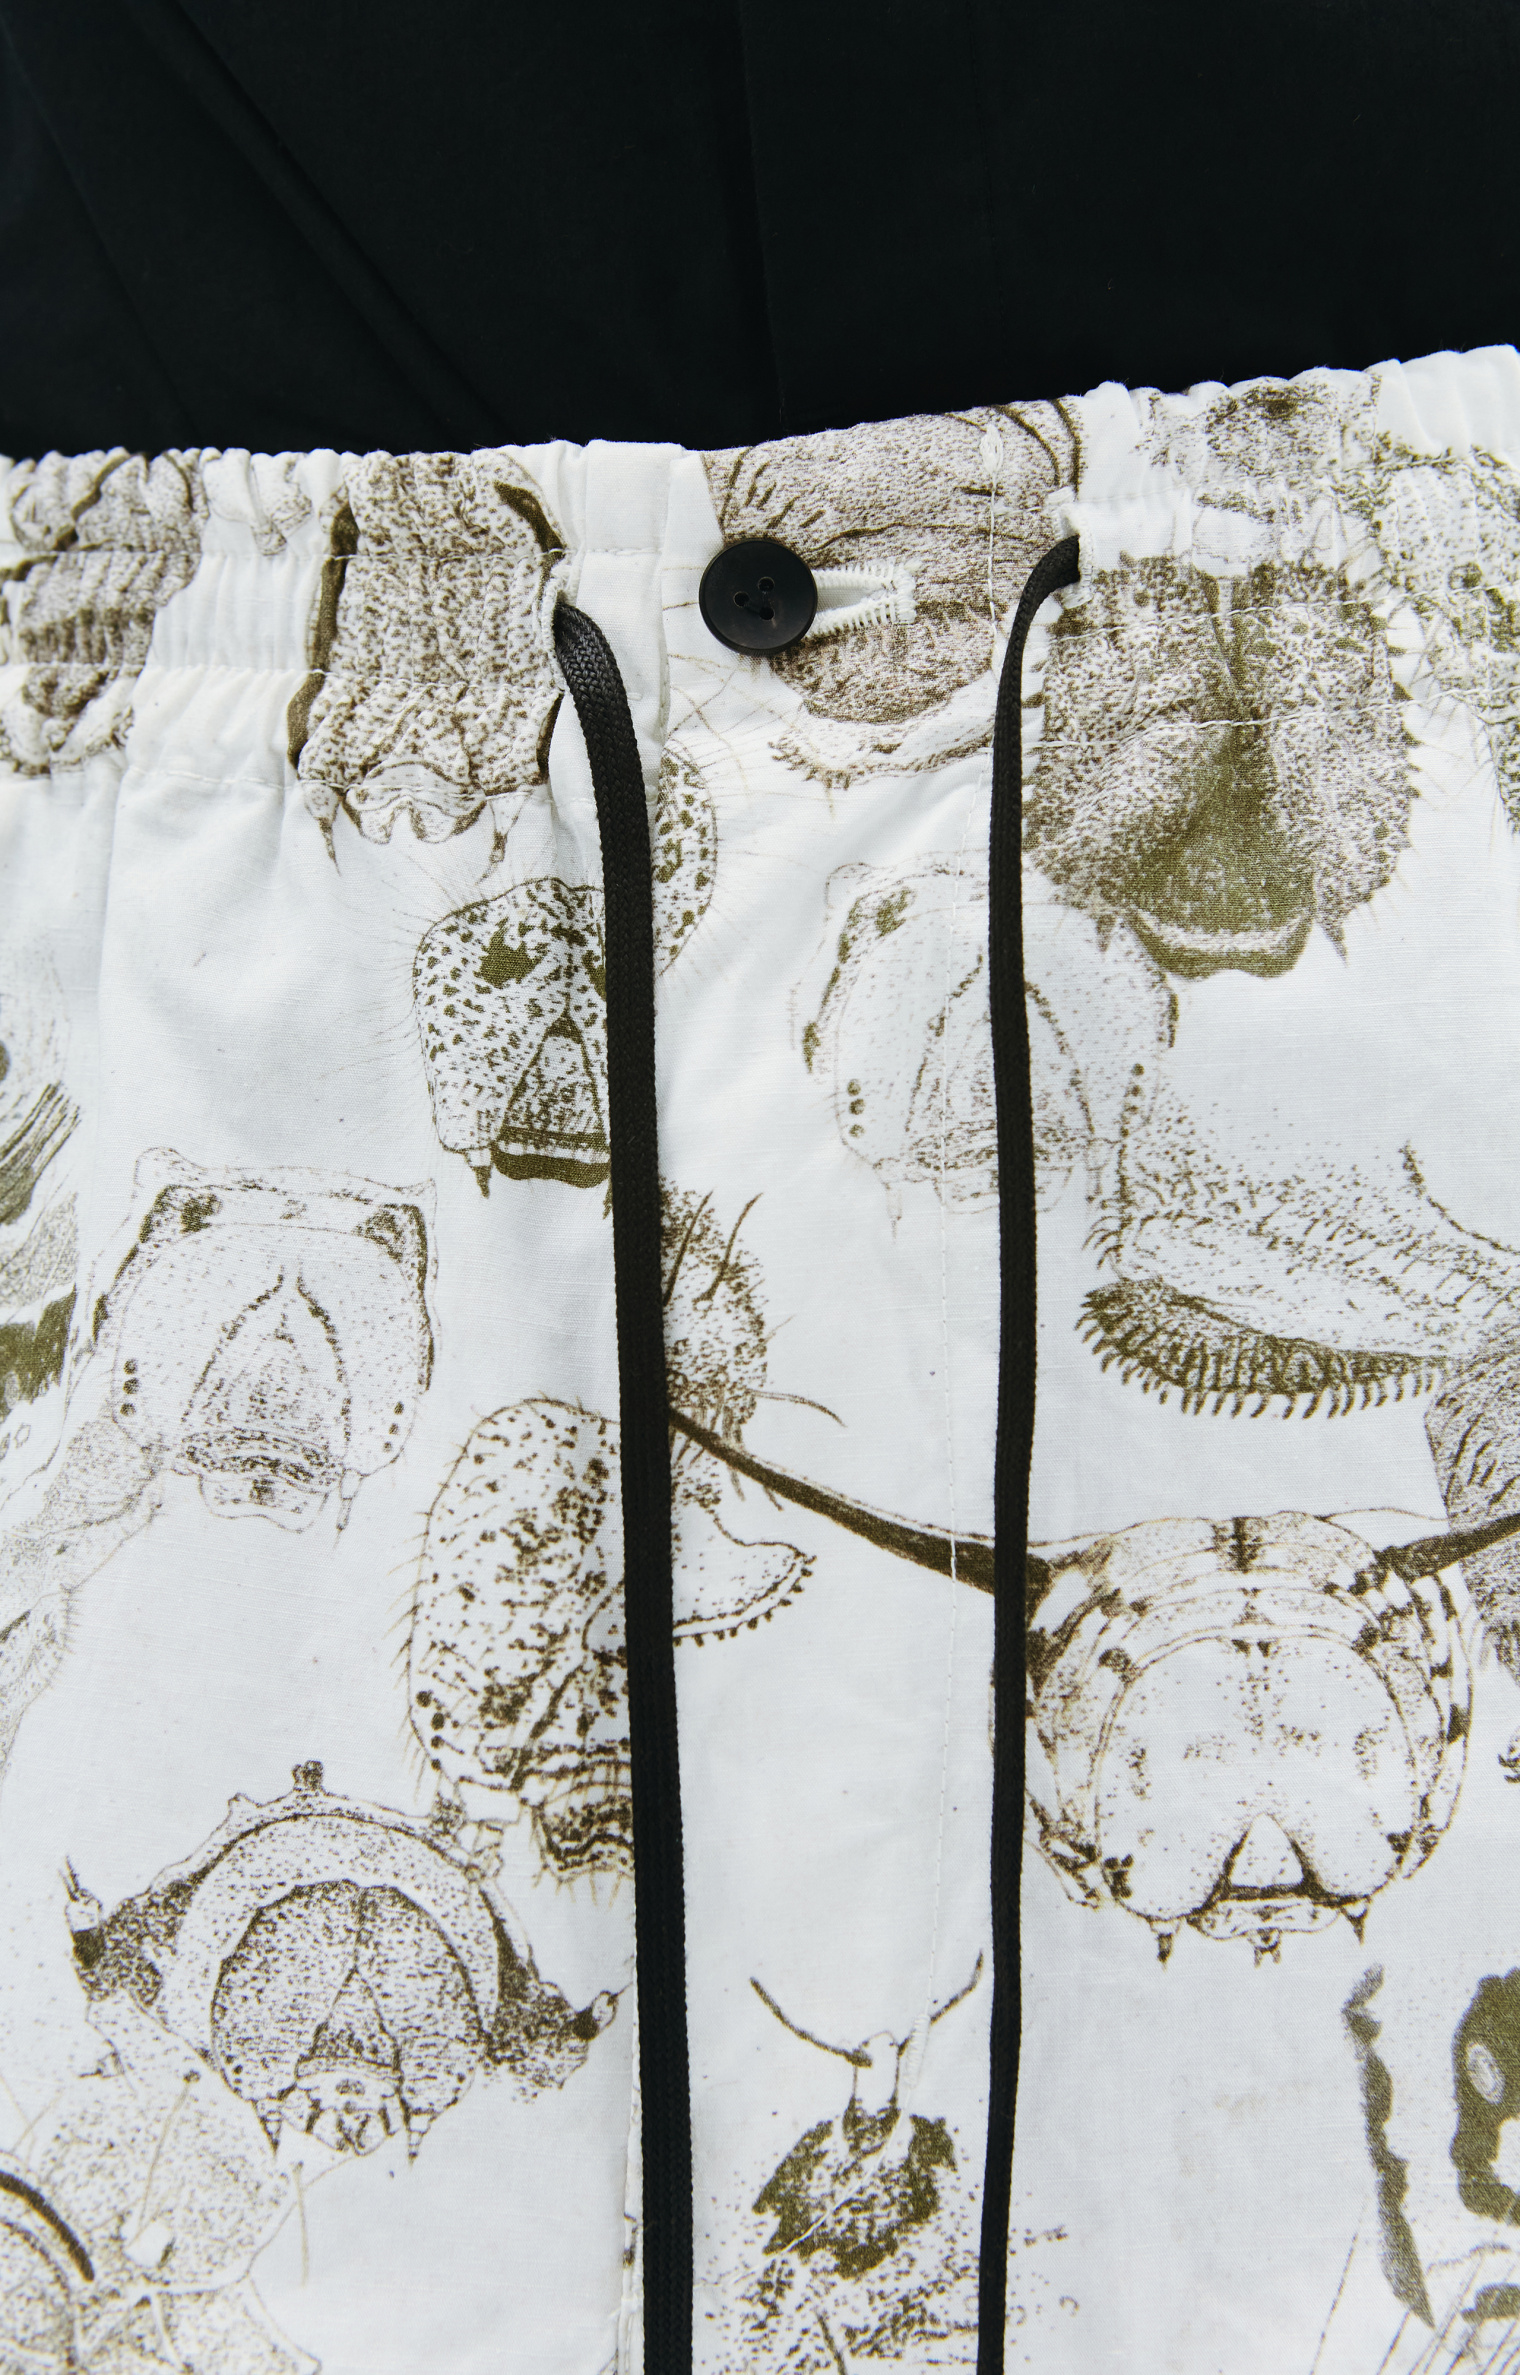 The Viridi-Anne Широкие брюки с принтом насекомых